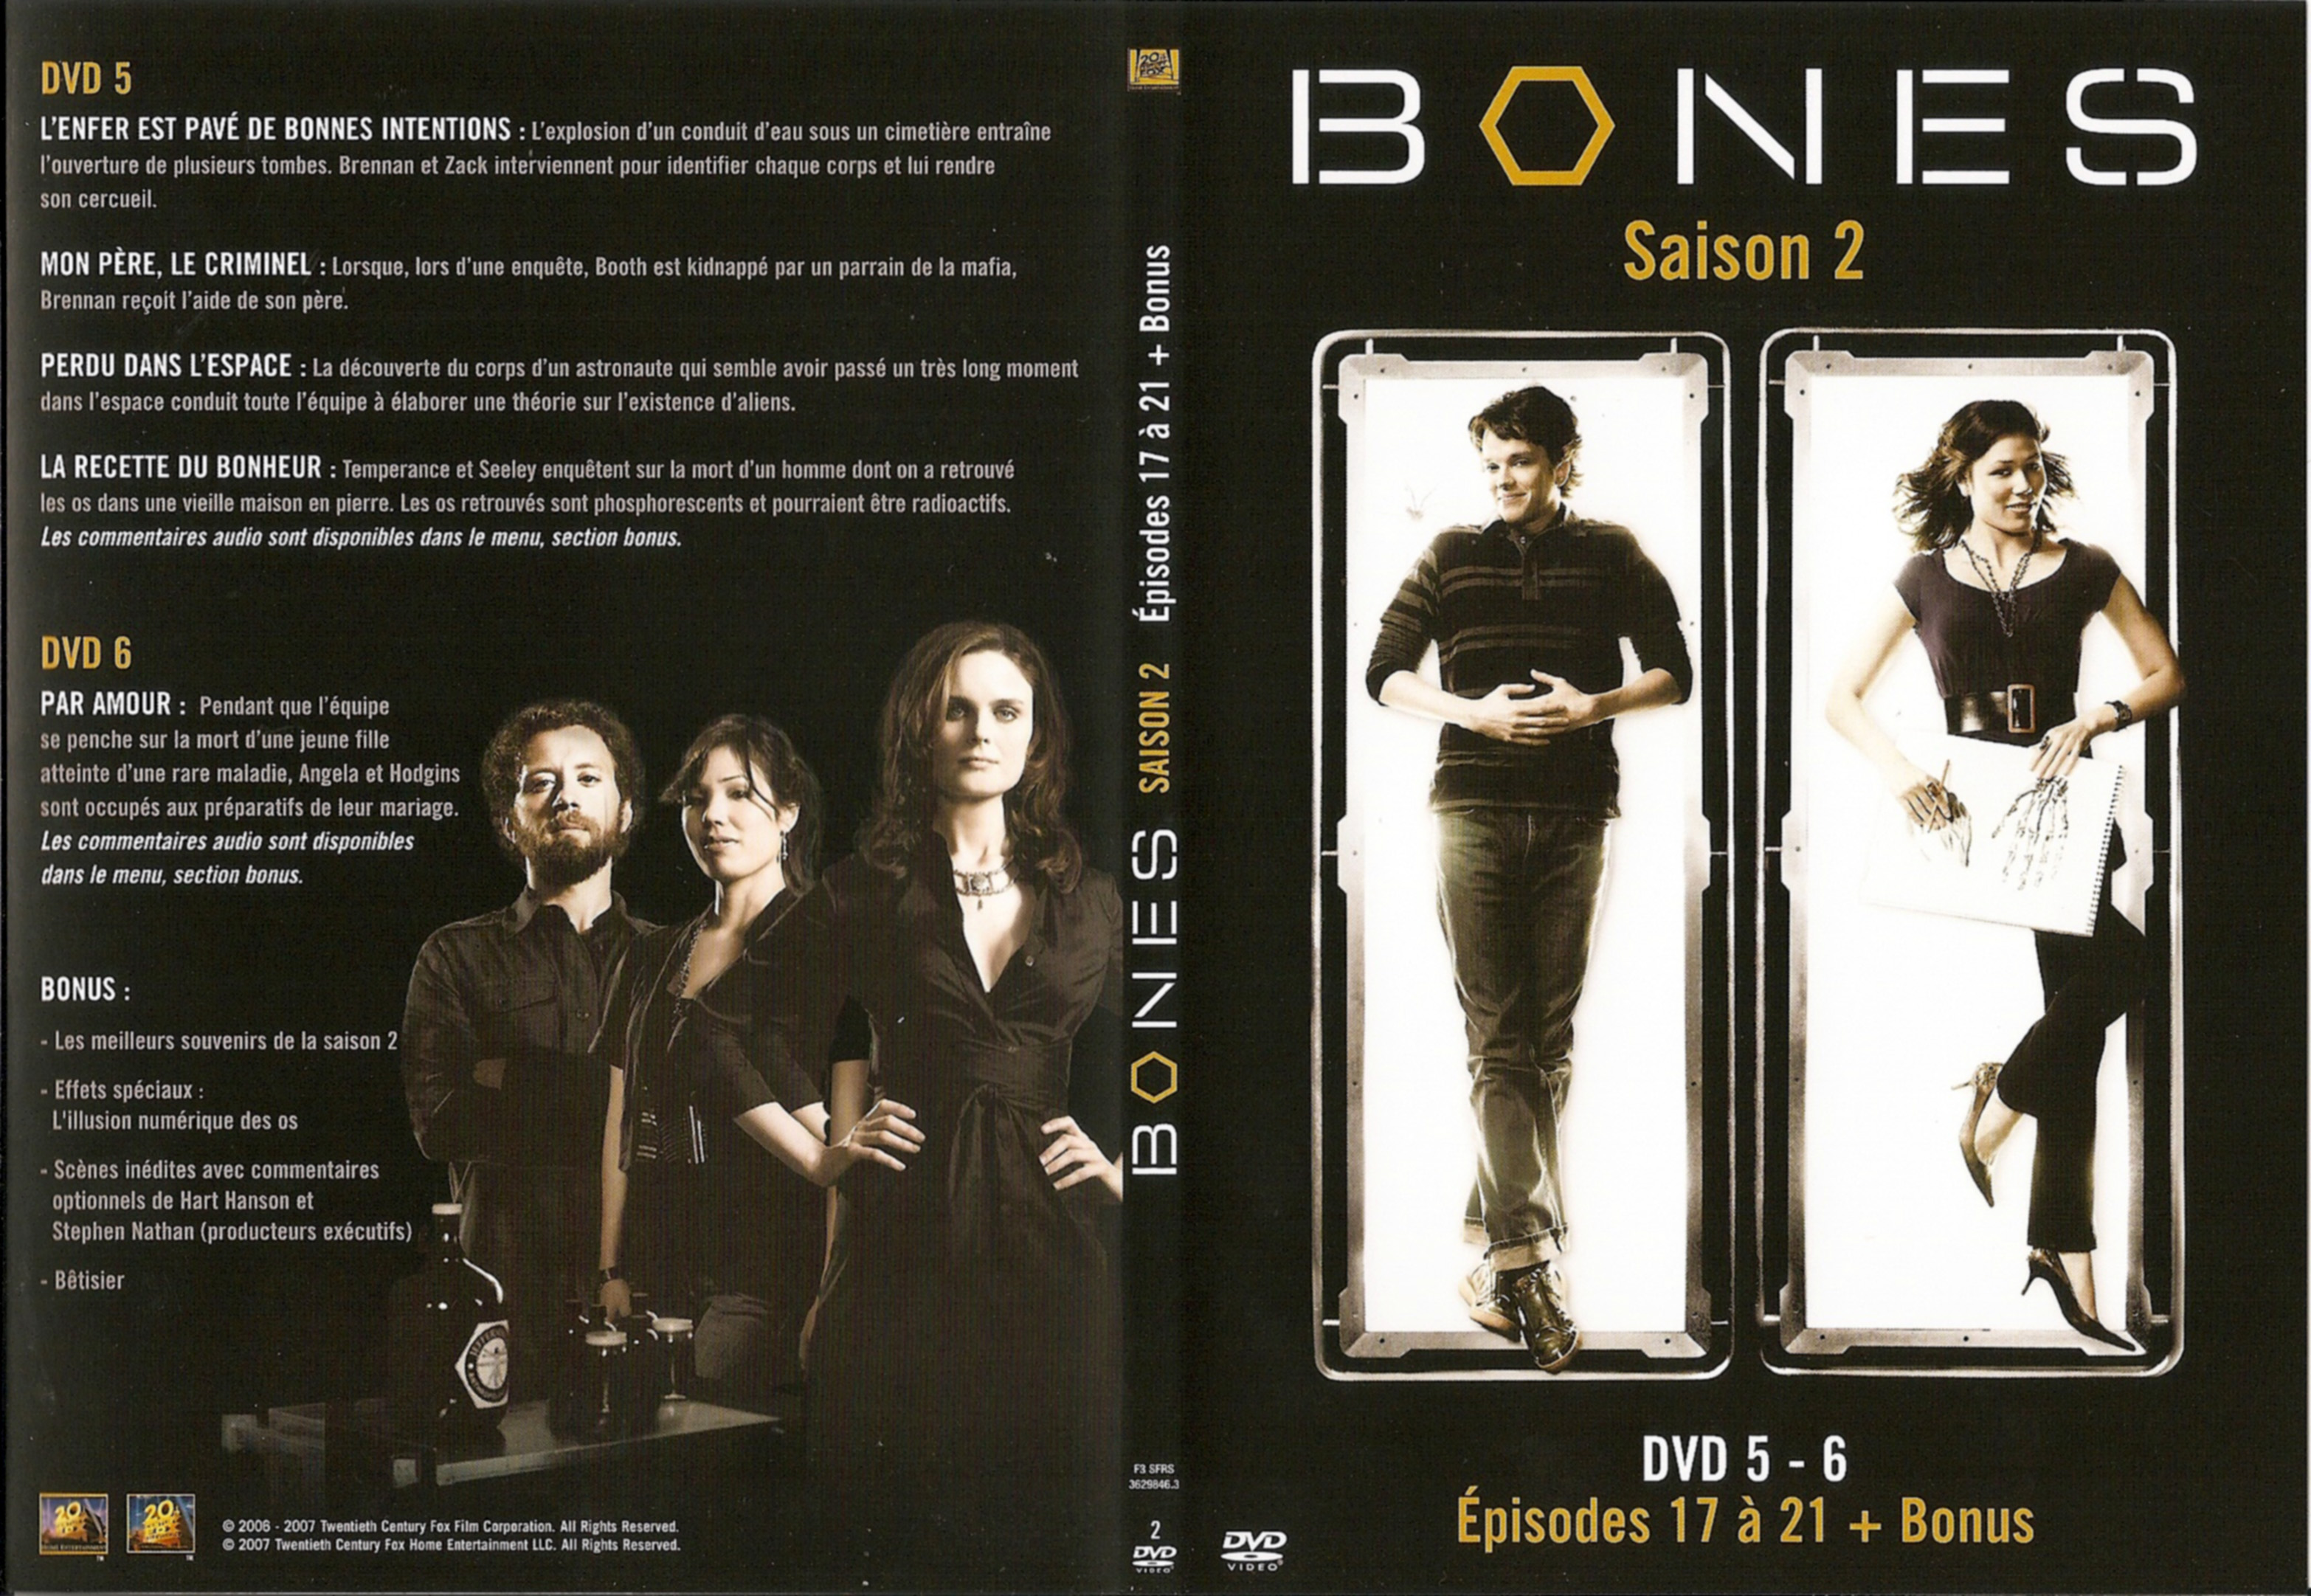 Jaquette DVD Bones Saison 2 DVD 3